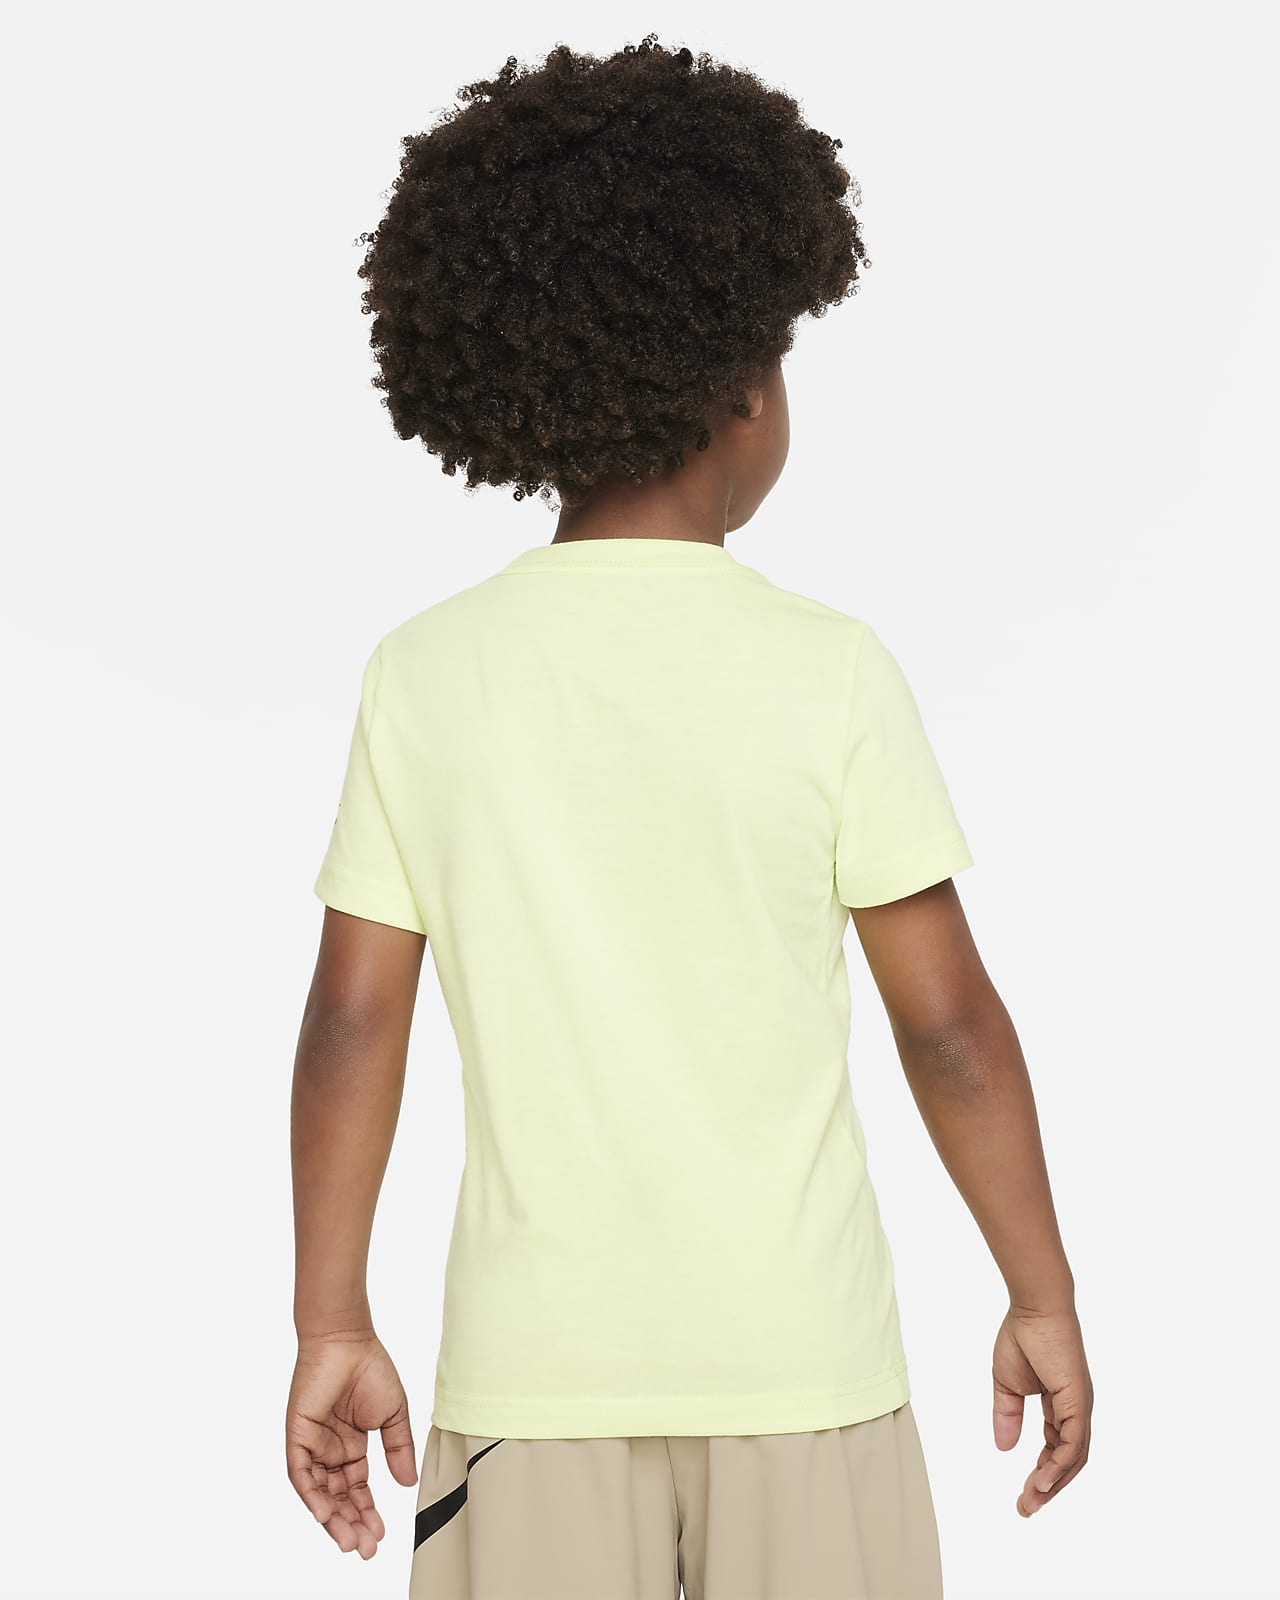 Little T-Shirt. Futura Nike Tee Dri-FIT Stripe Kids\' Scape